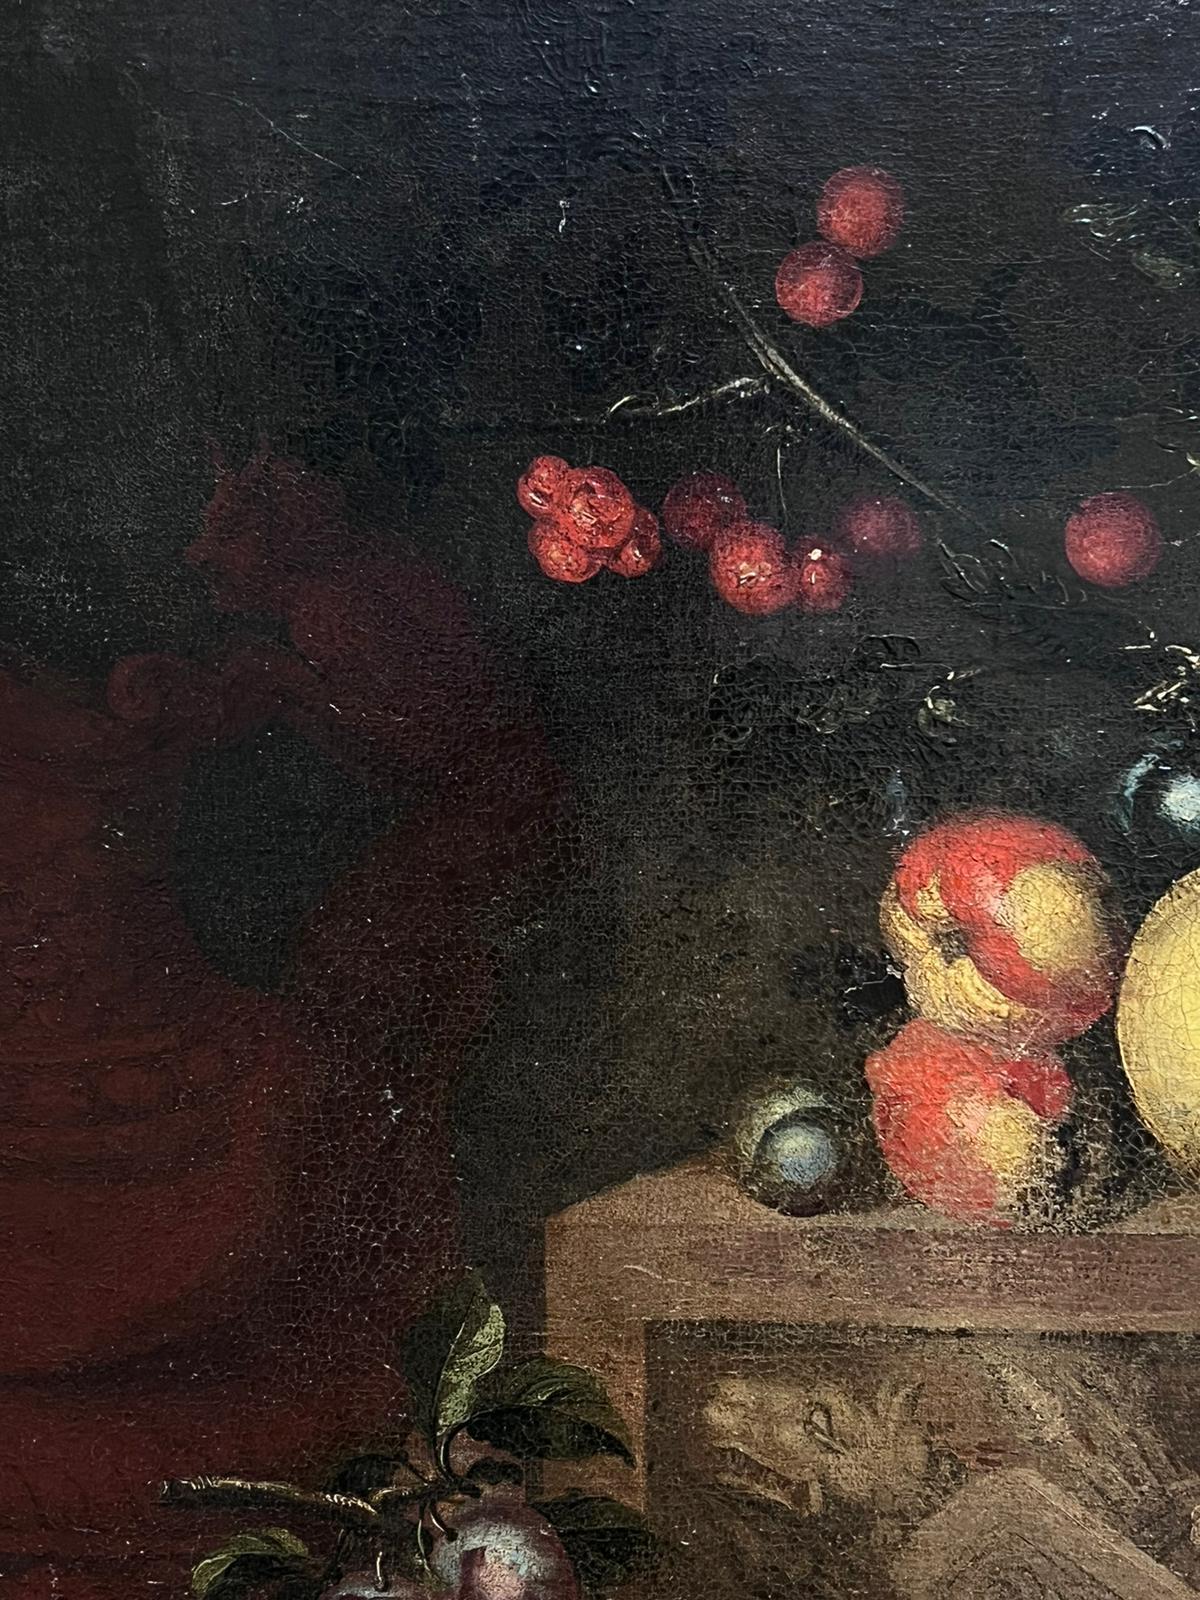 Feines Stillleben des 17. Jahrhunderts, Ölgemälde eines alten Meisters, Obst auf Ledge, Italien (Alte Meister), Painting, von Italian 17th Century Old Master